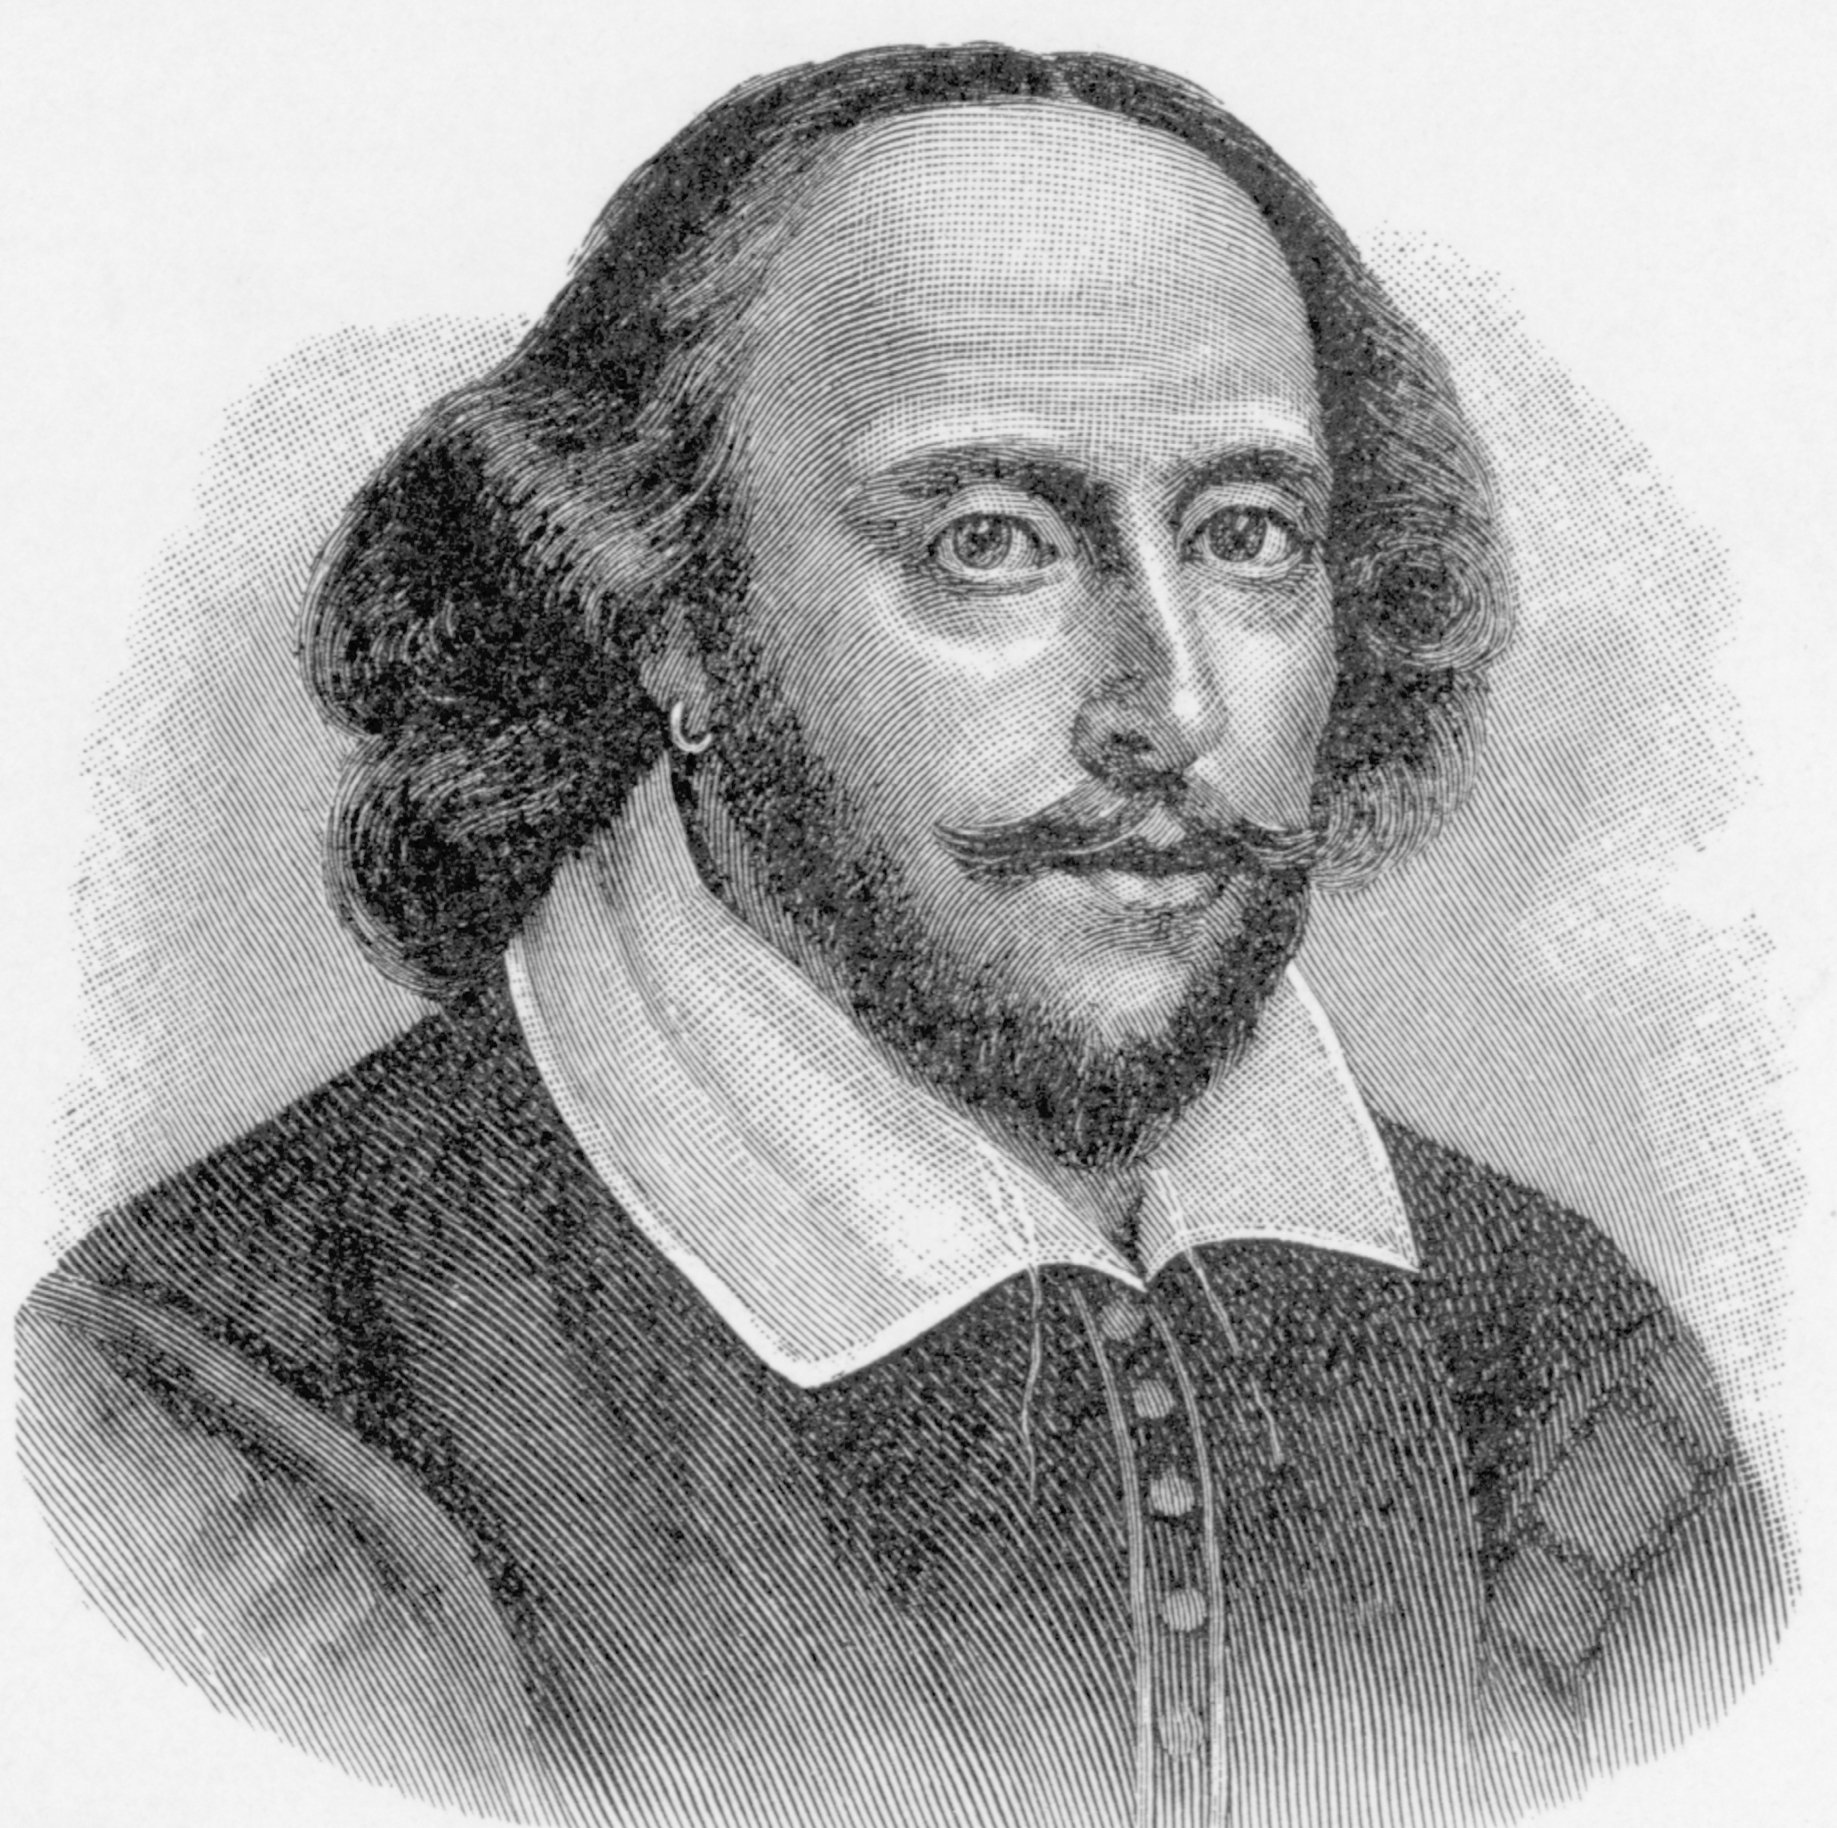 William Shakespeare wearing an earring